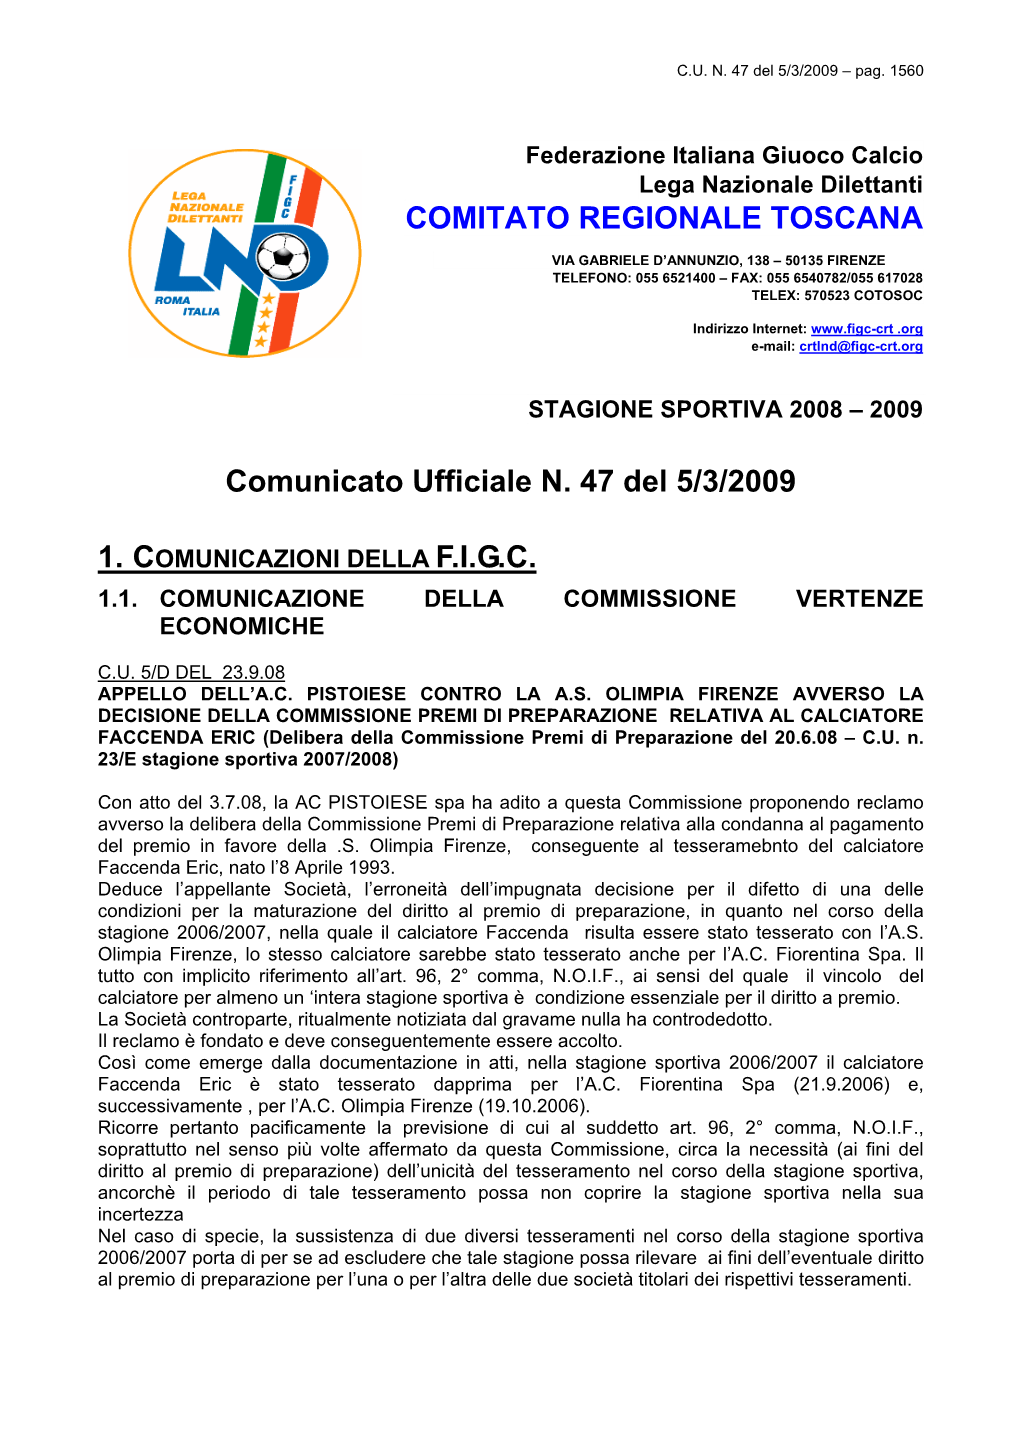 Comunicato Ufficiale N. 47 Del 5/3/2009 COMITATO REGIONALE